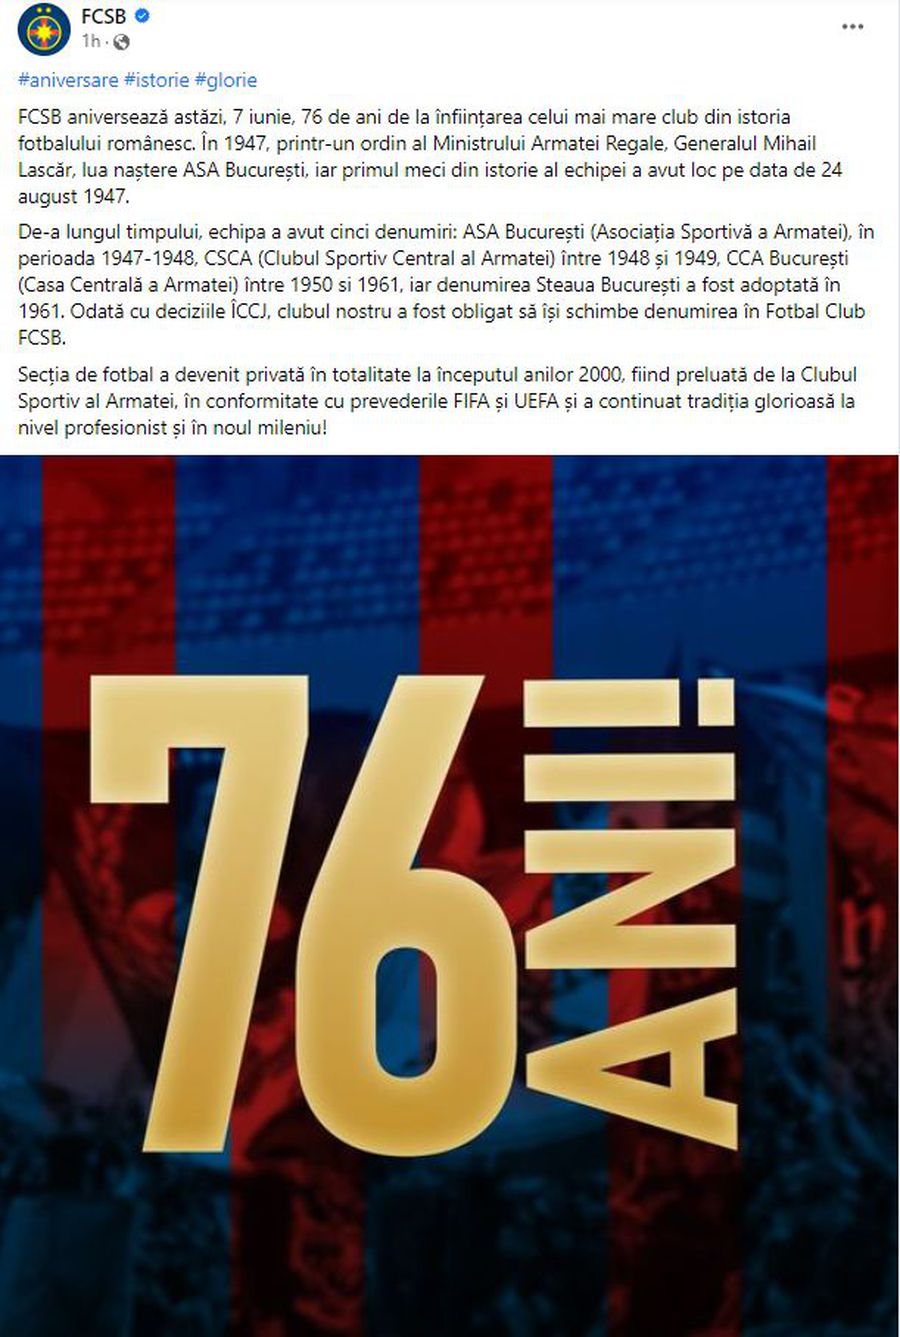 UEFA, de partea FCSB în războiul cu CSA! Mesajul postat chiar pe 7 iunie,  la 76 de ani de la înființarea Stelei București